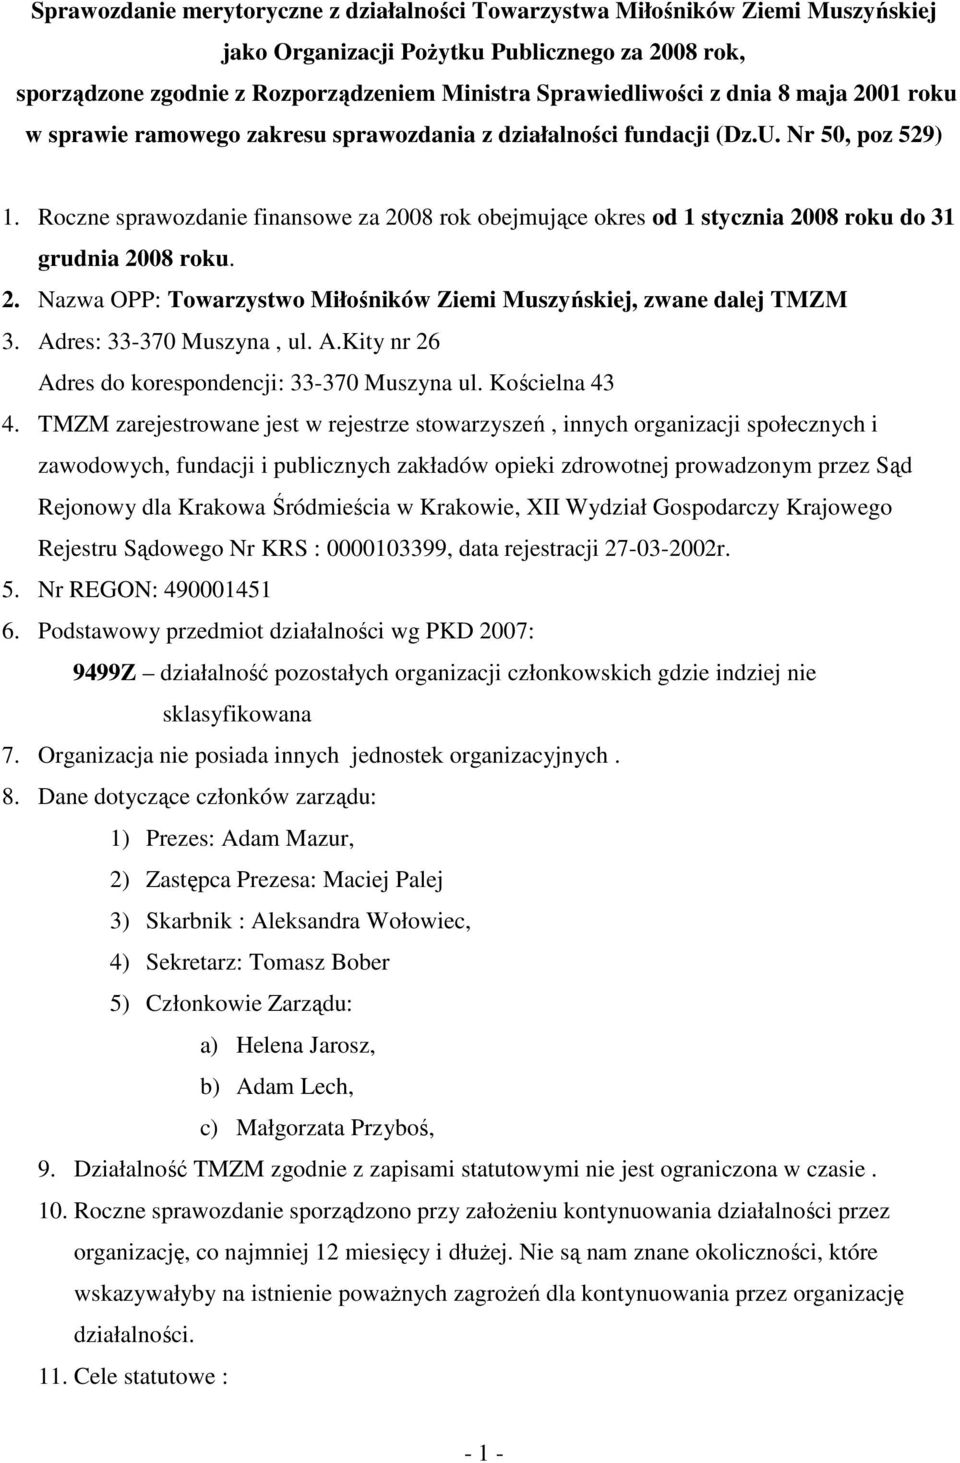 Roczne sprawozdanie finansowe za 2008 rok obejmujące okres od 1 stycznia 2008 roku do 31 grudnia 2008 roku. 2. Nazwa OPP: Towarzystwo Miłośników Ziemi Muszyńskiej, zwane dalej TMZM 3.